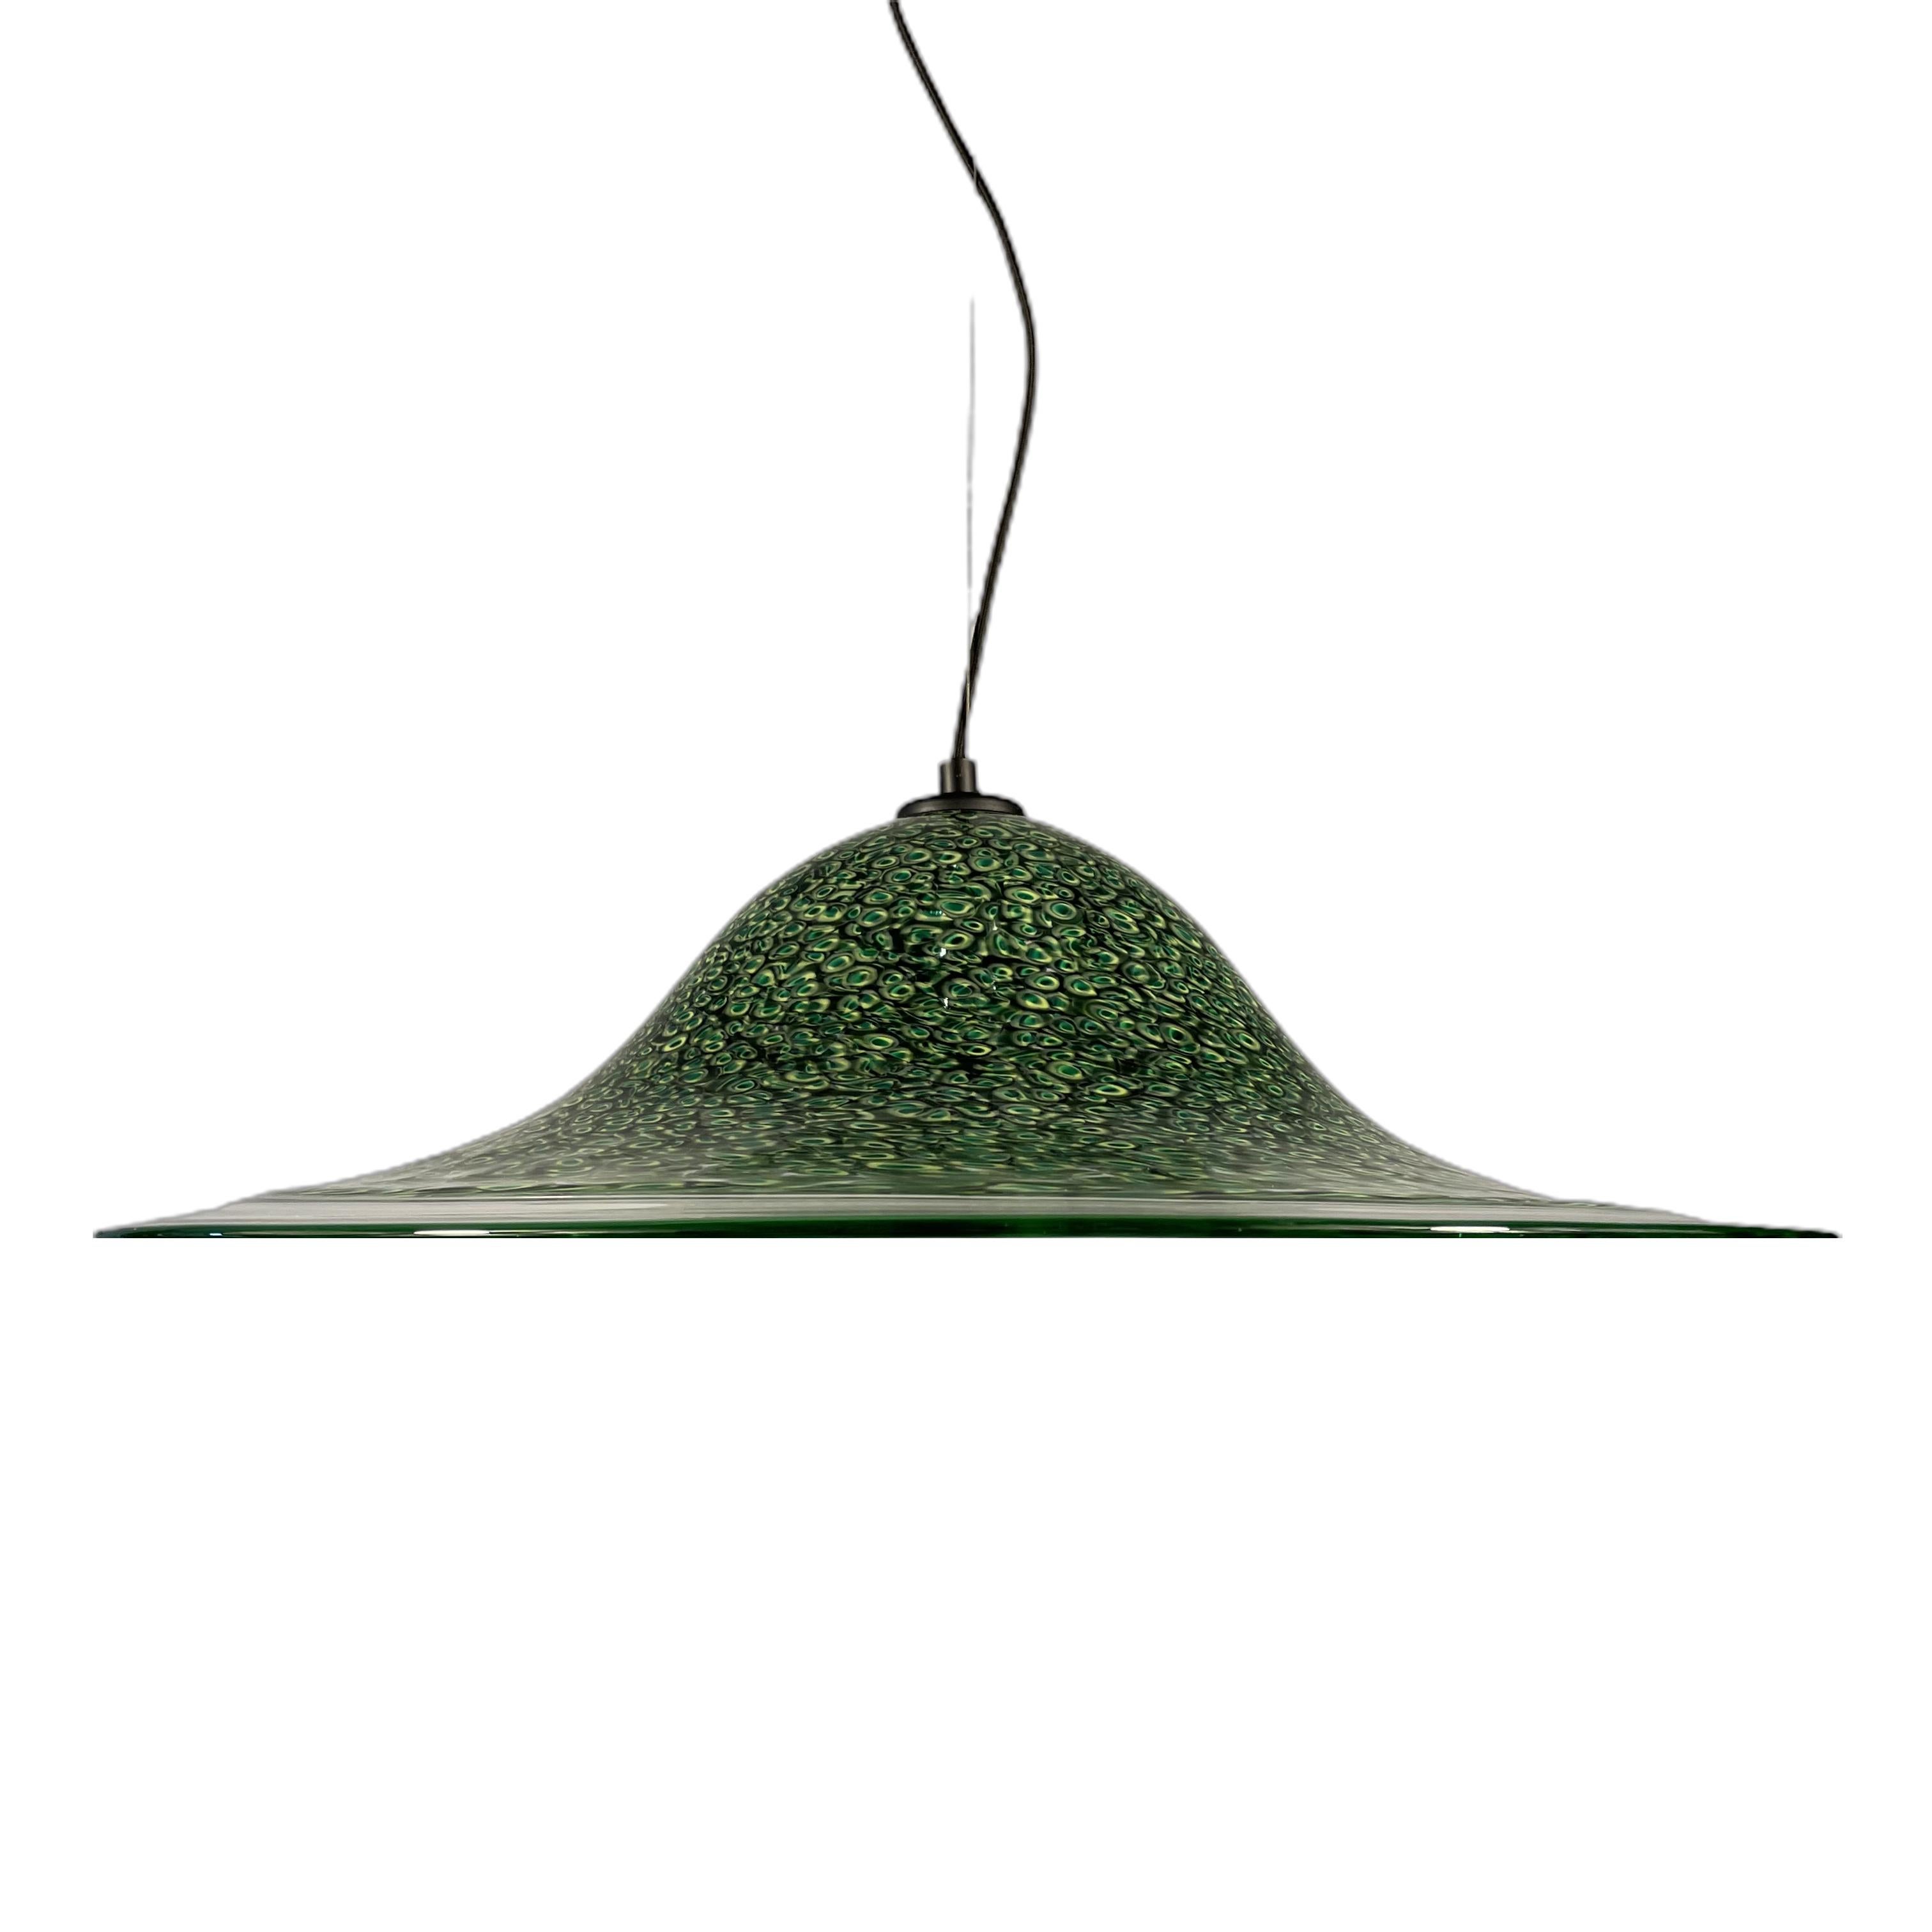 Nouveau stock !
Cette lampe suspendue est une impressionnante œuvre d'art en verre de Murano conçue par le célèbre designer Gae Aulenti et produite par l'entreprise italienne Luciano Vistosi dans les années 1970. Le verre de Murano poli dans un beau